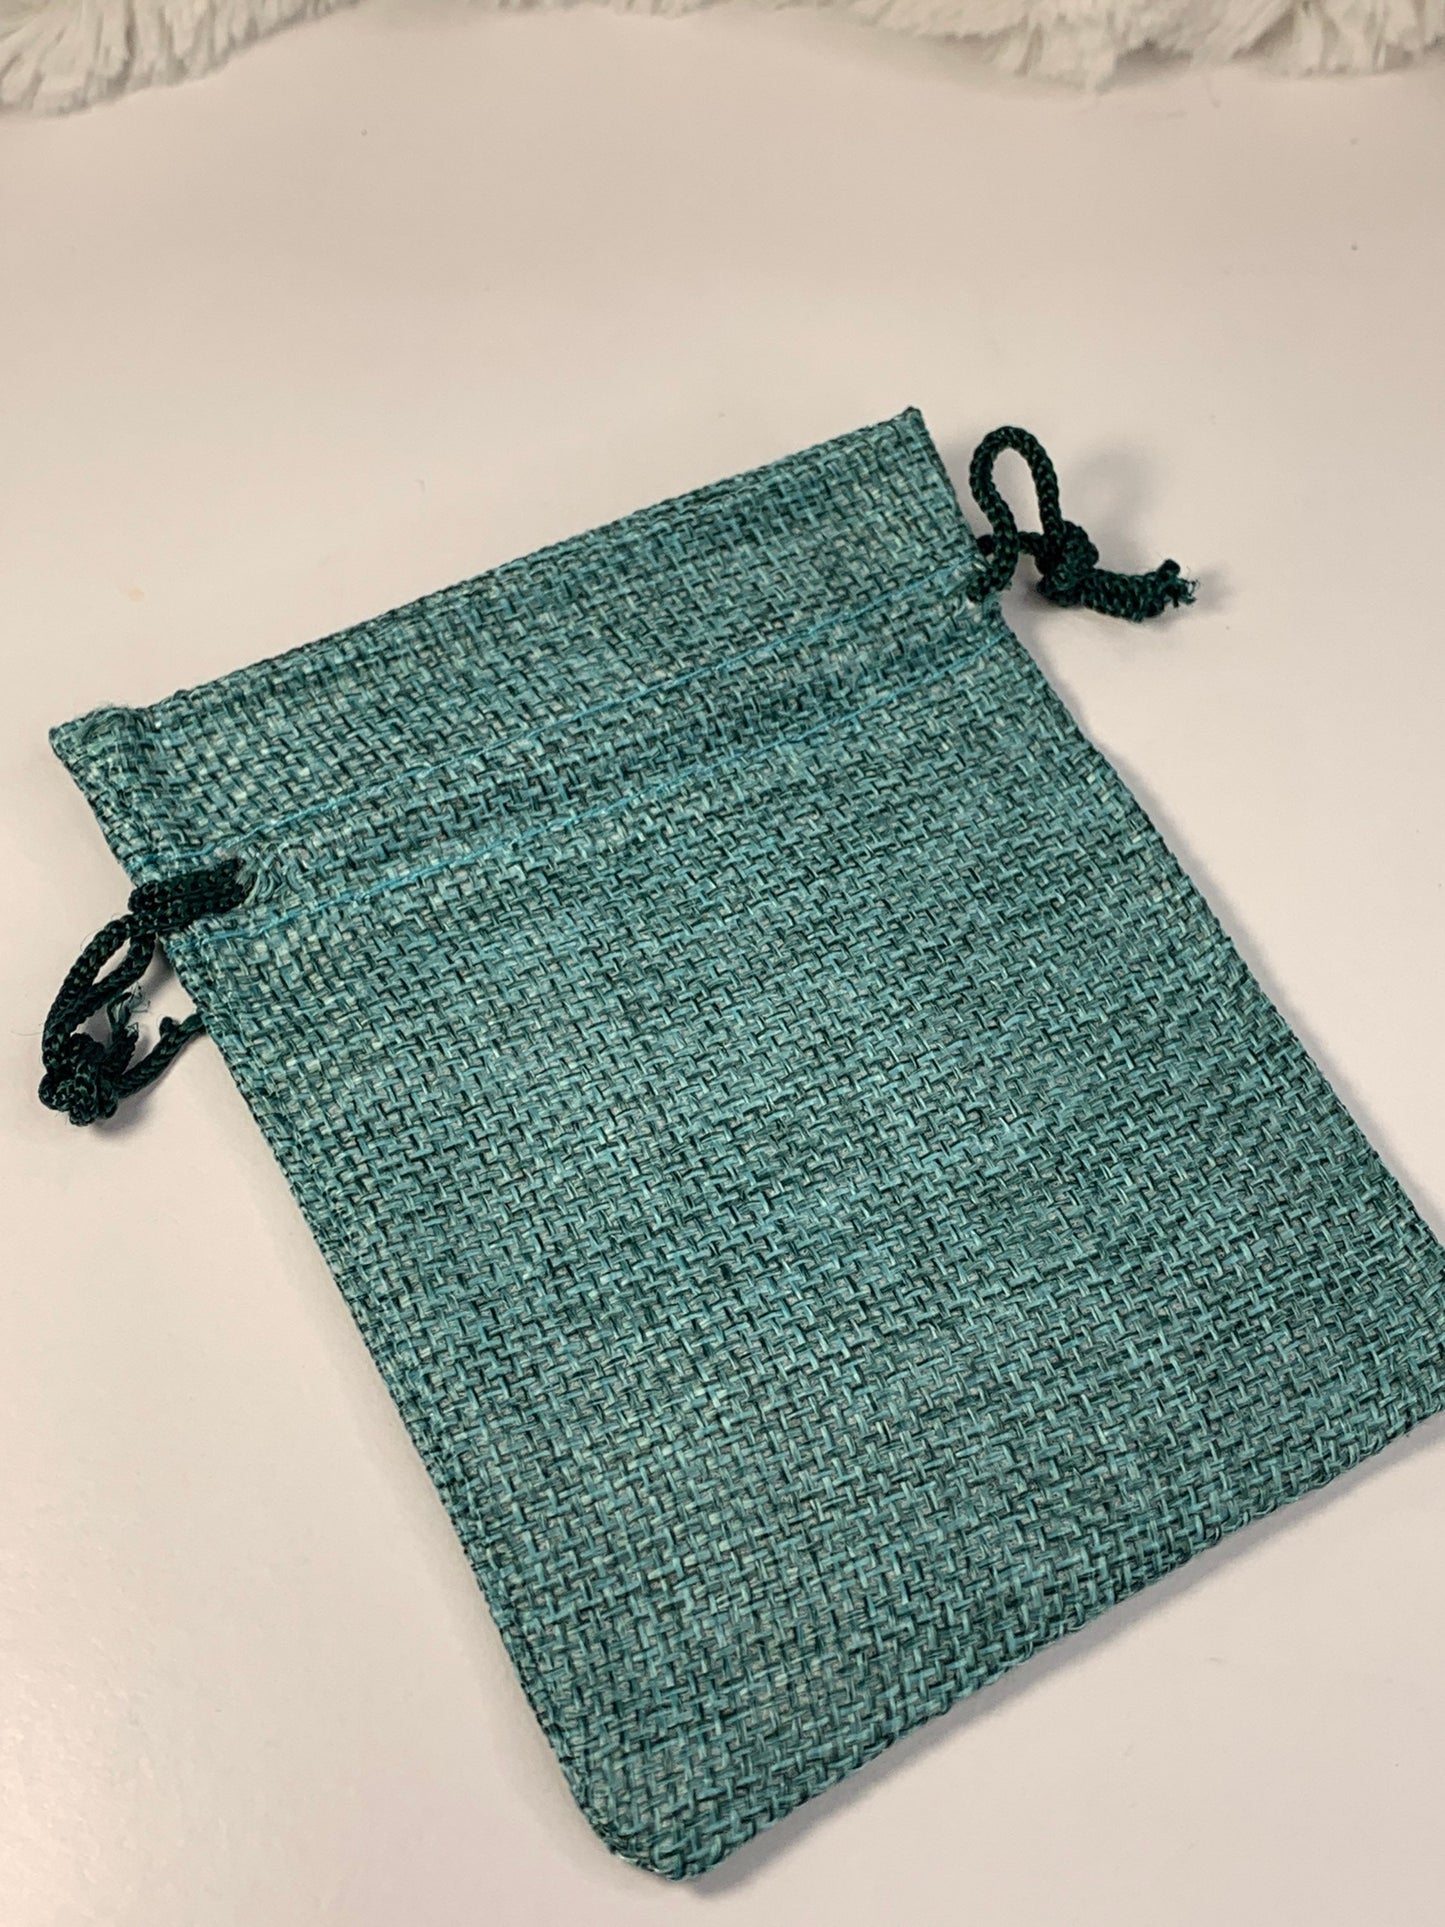 Aqua Green Burlap Drawstring Bag (Approx. 3 1/2" x 4 1/4") BAG-0010